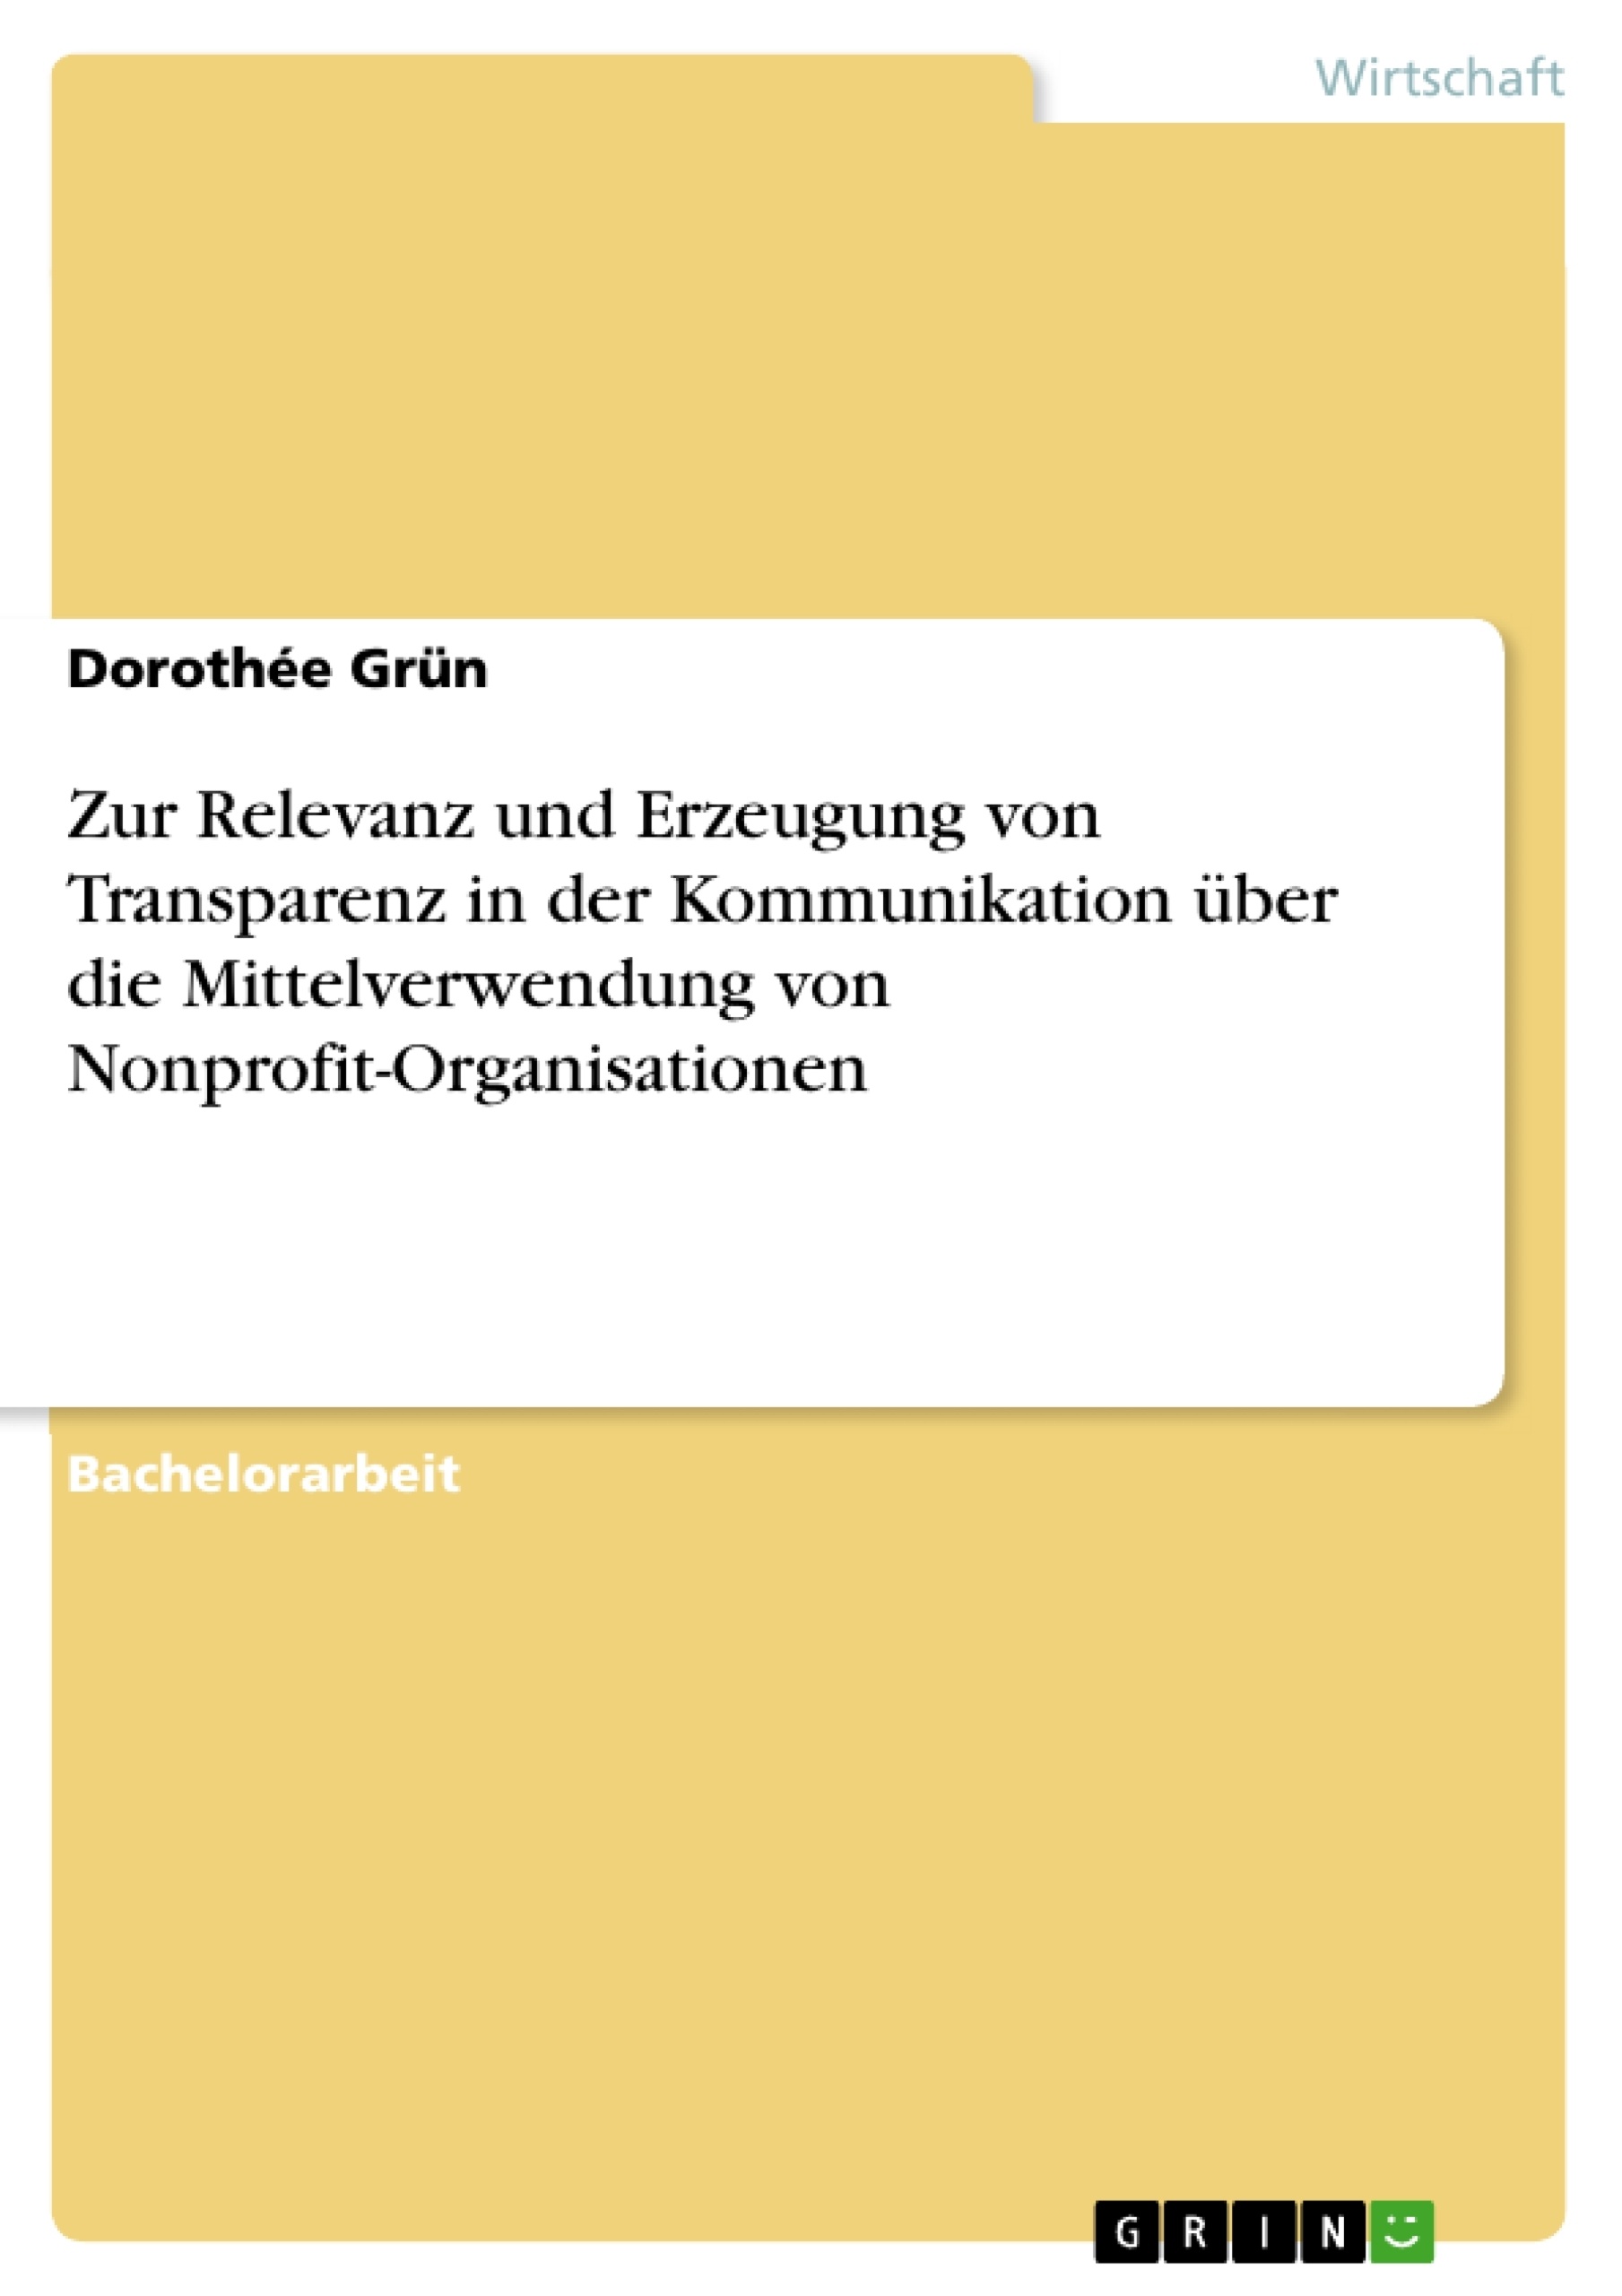 Titel: Zur Relevanz und Erzeugung von Transparenz in der Kommunikation über die Mittelverwendung von Nonprofit-Organisationen